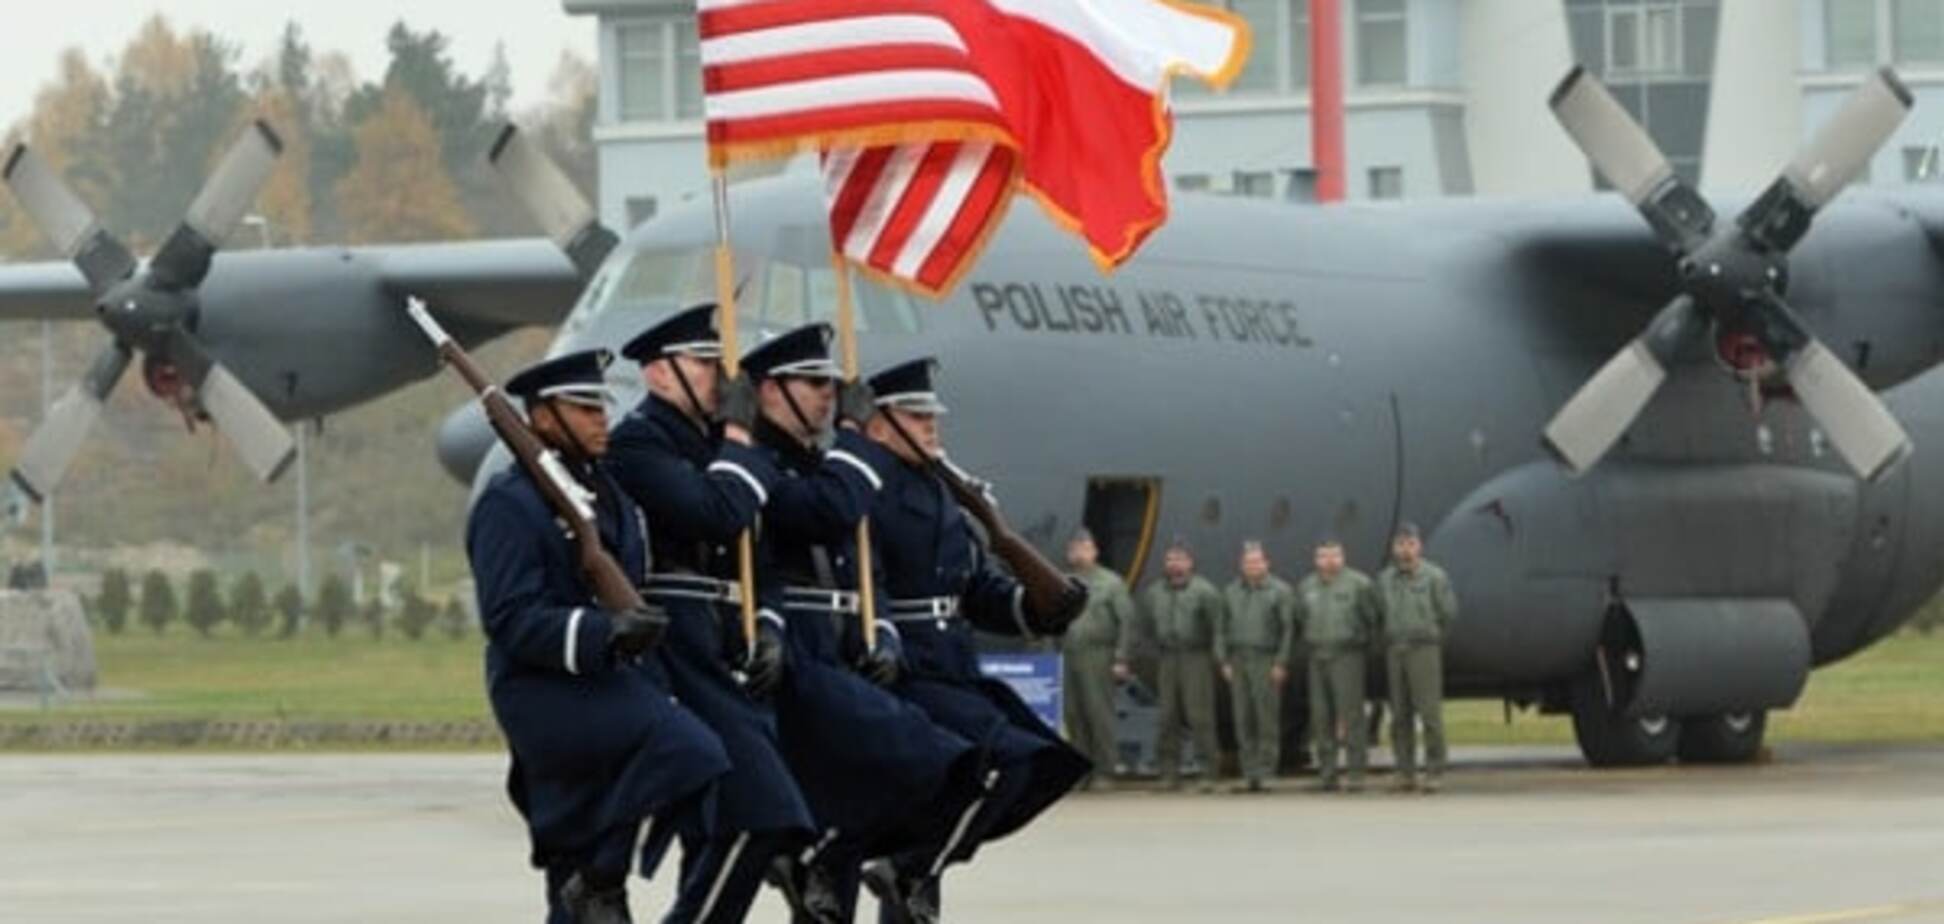 США построит базу противоракетной обороны в Польше - СМИ